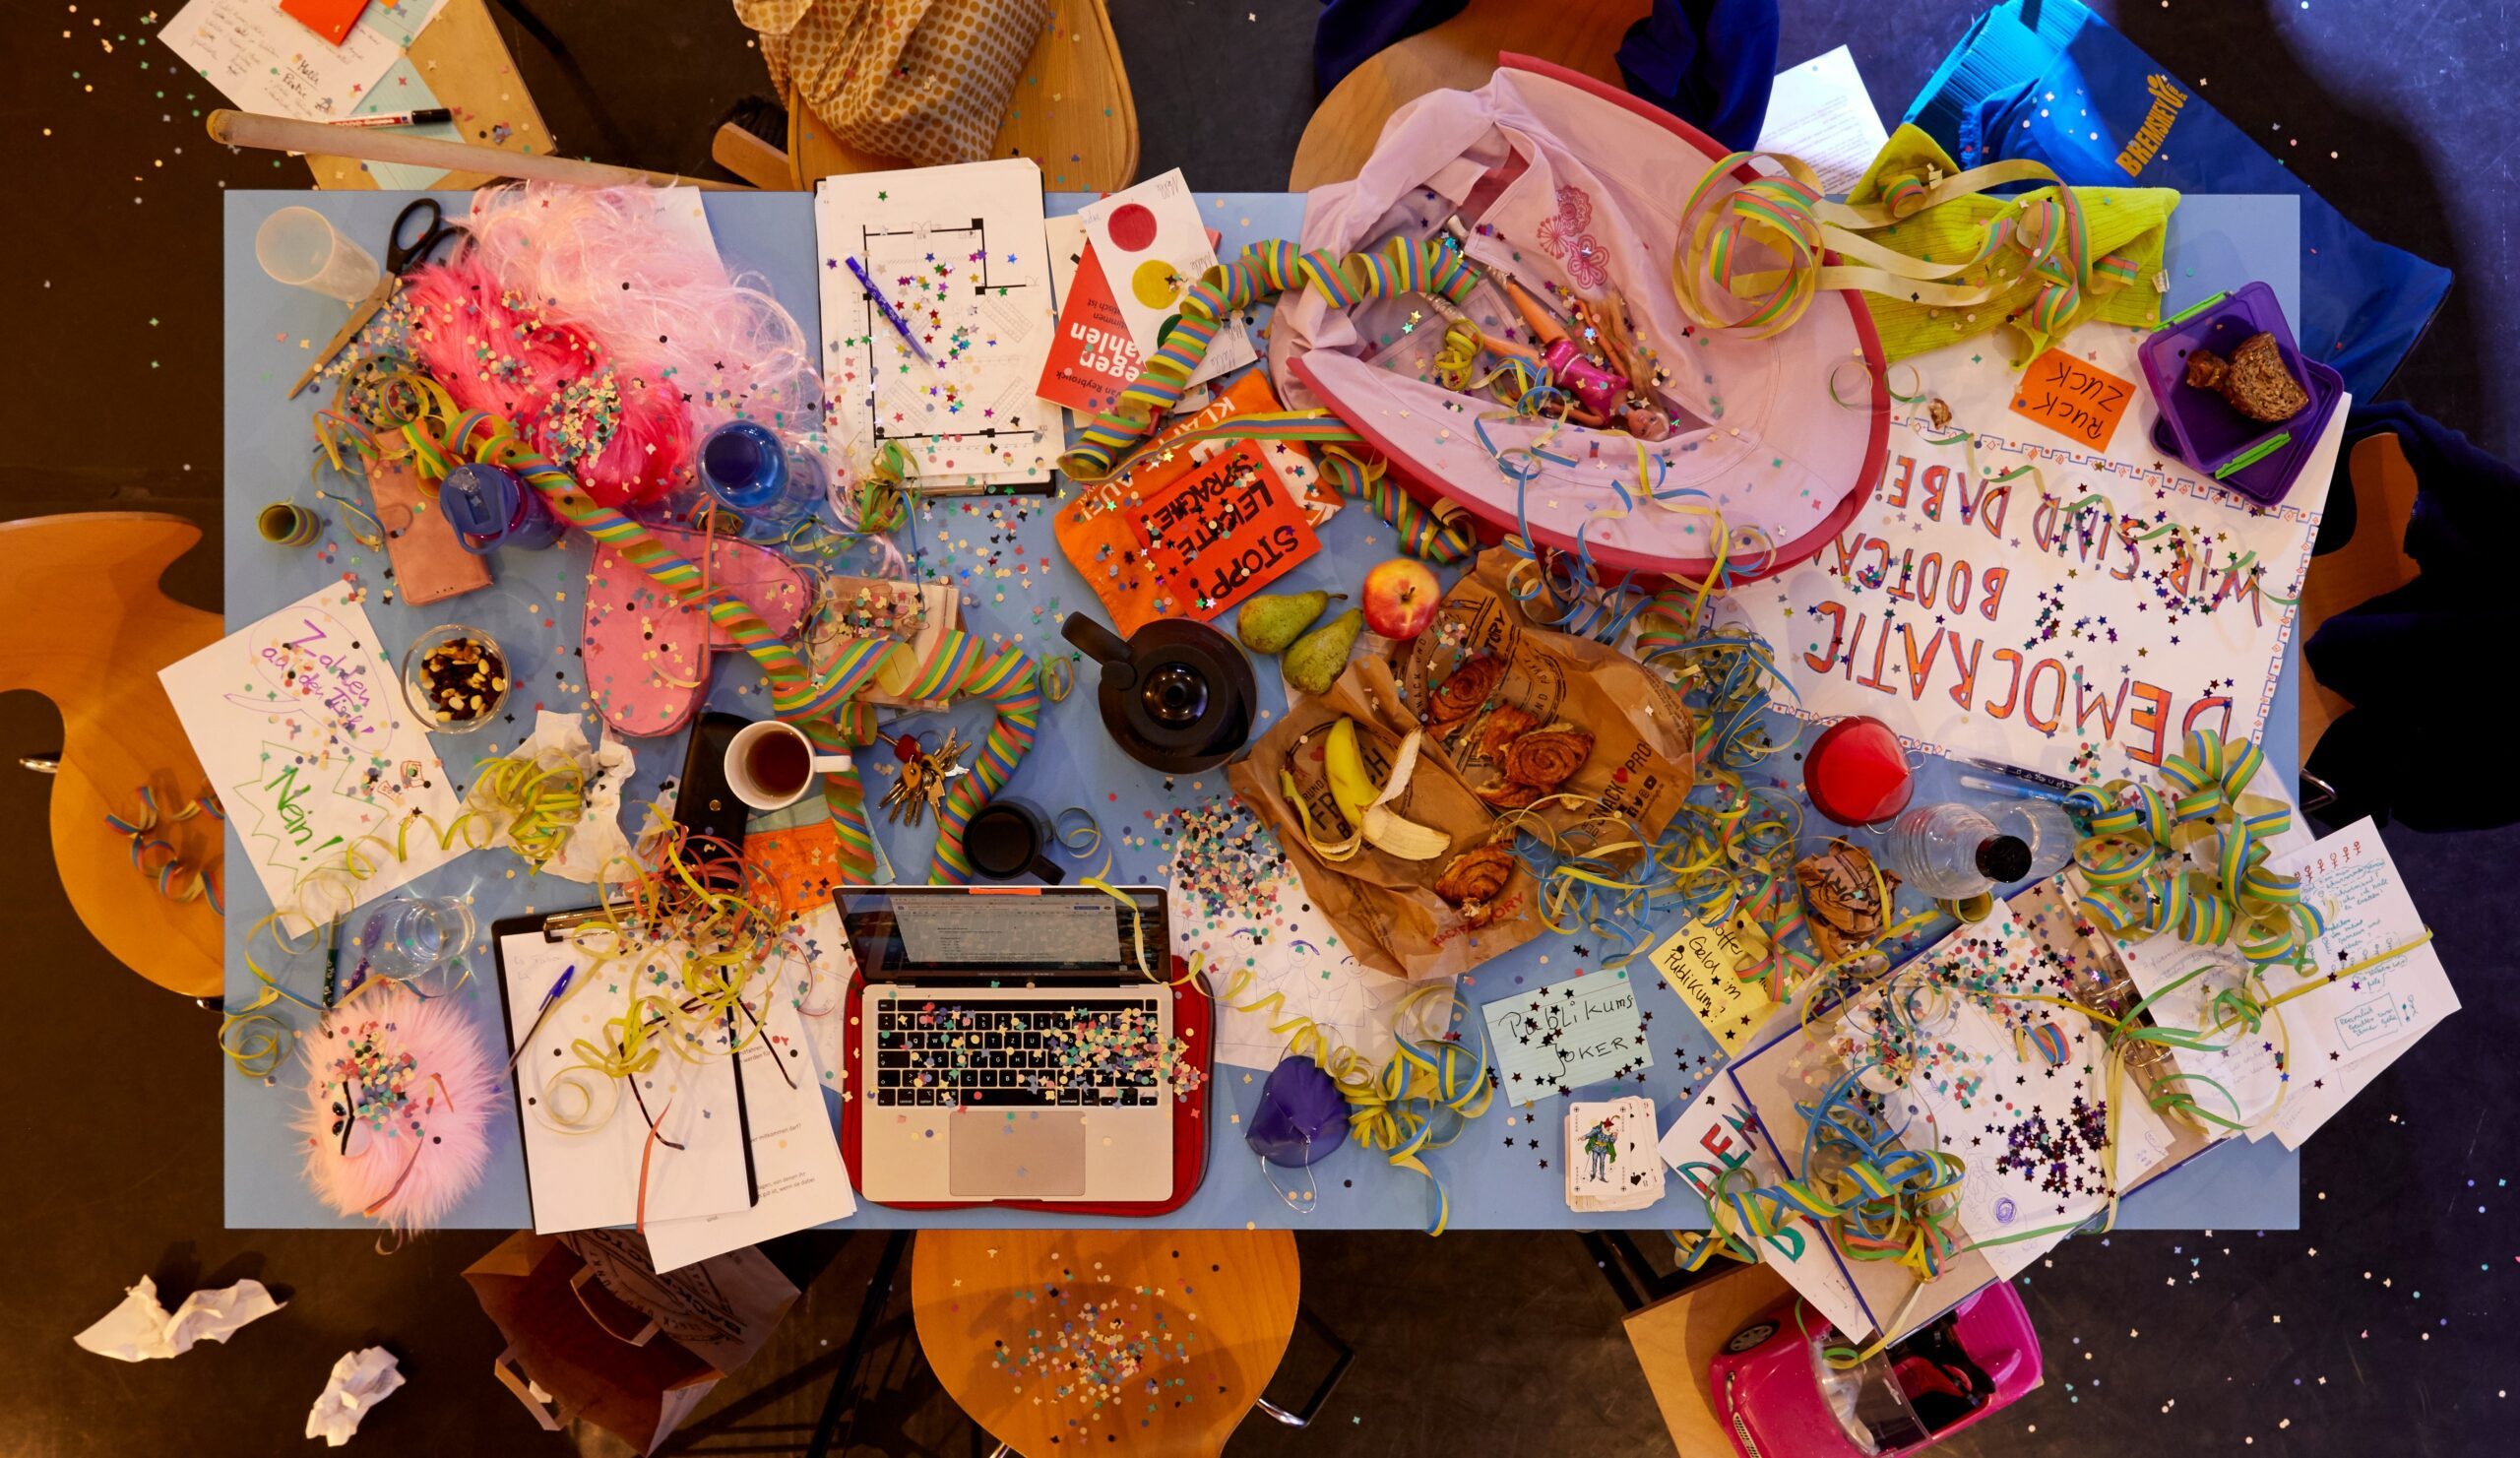 Tisch von oben: ein buntes Durcheinander aus Laptop, Luftschlangen, Obst, Kaffeebechern